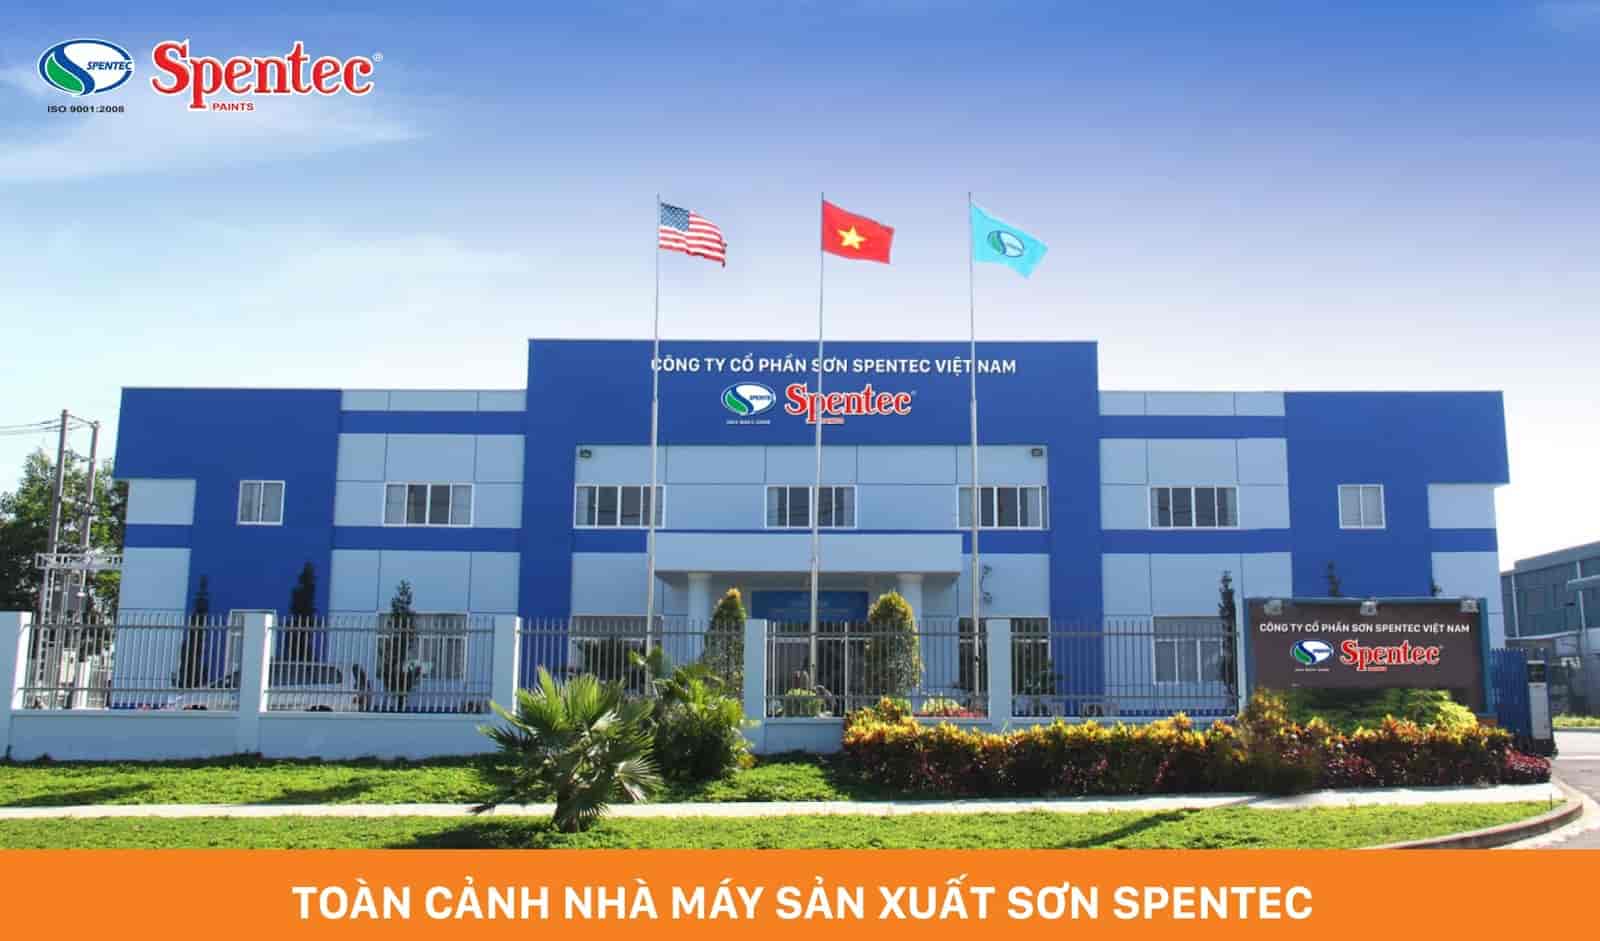 Về Công ty Cổ phần Sơn Spentec Việt Nam